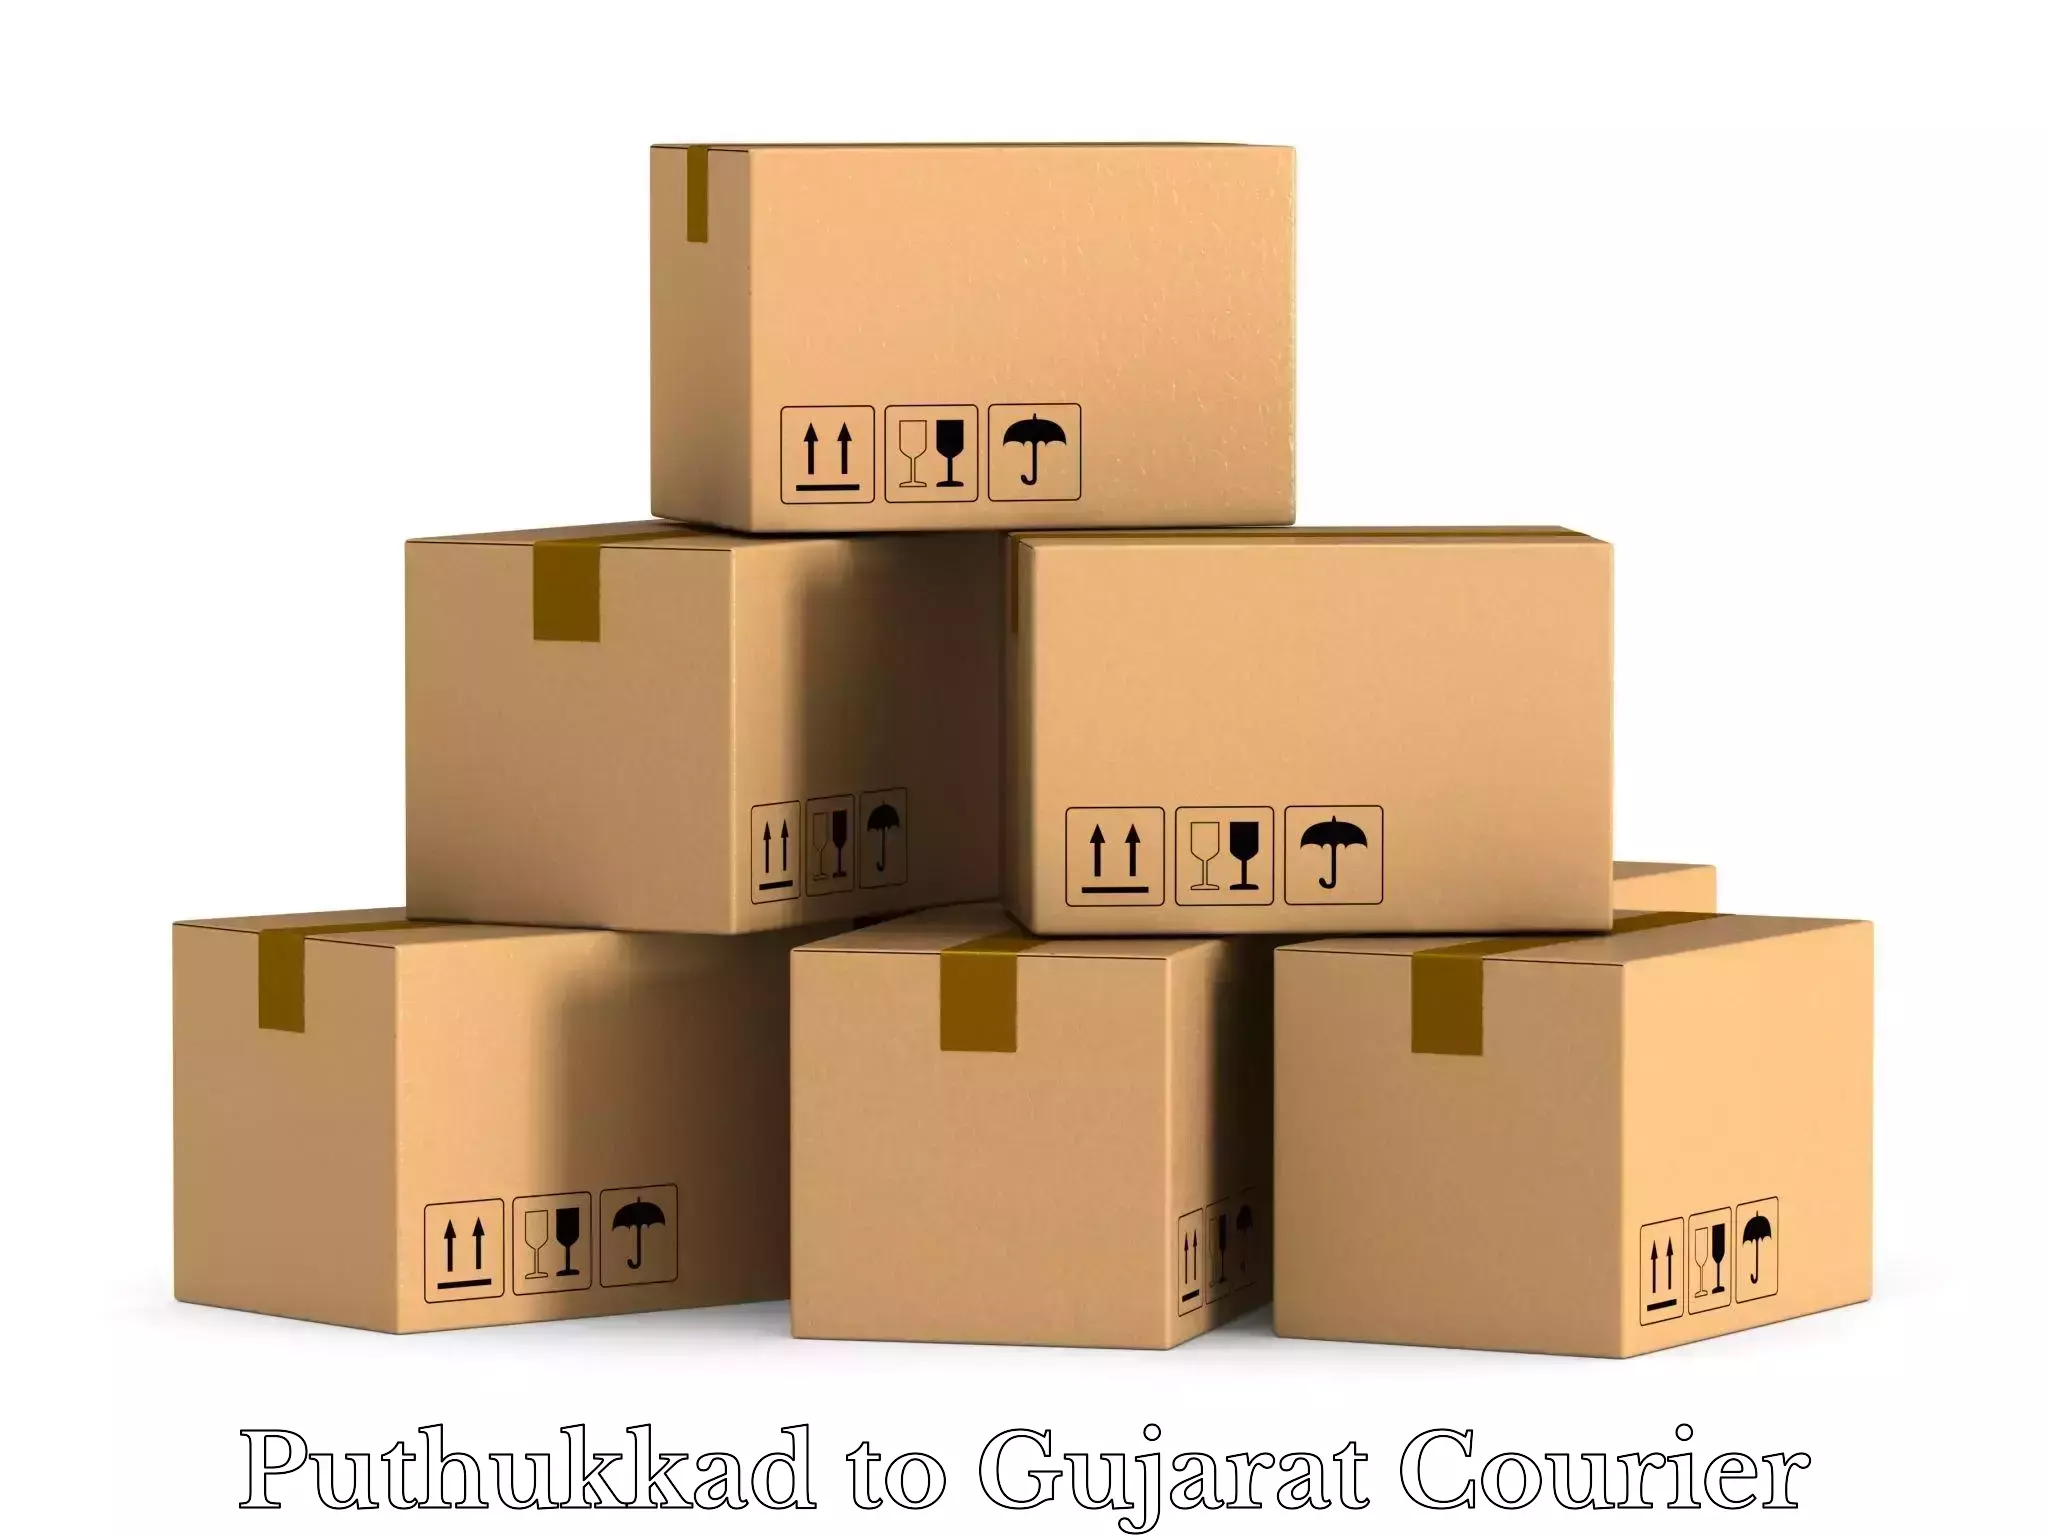 Luggage shipping estimate Puthukkad to Dhandhuka